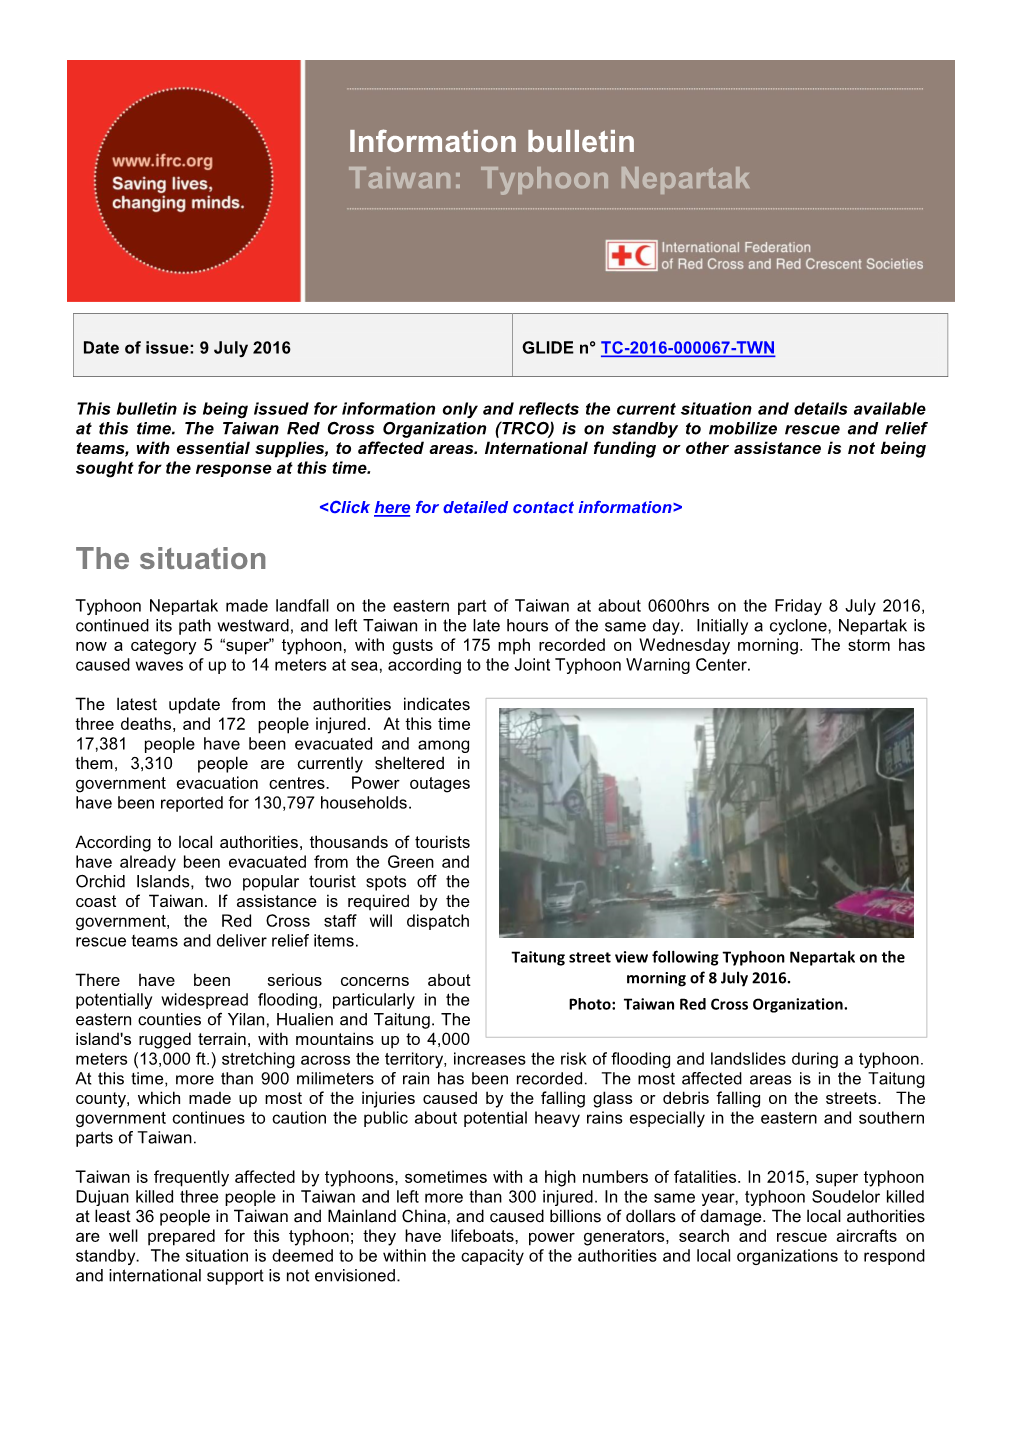 The Situation Information Bulletin Taiwan: Typhoon Nepartak